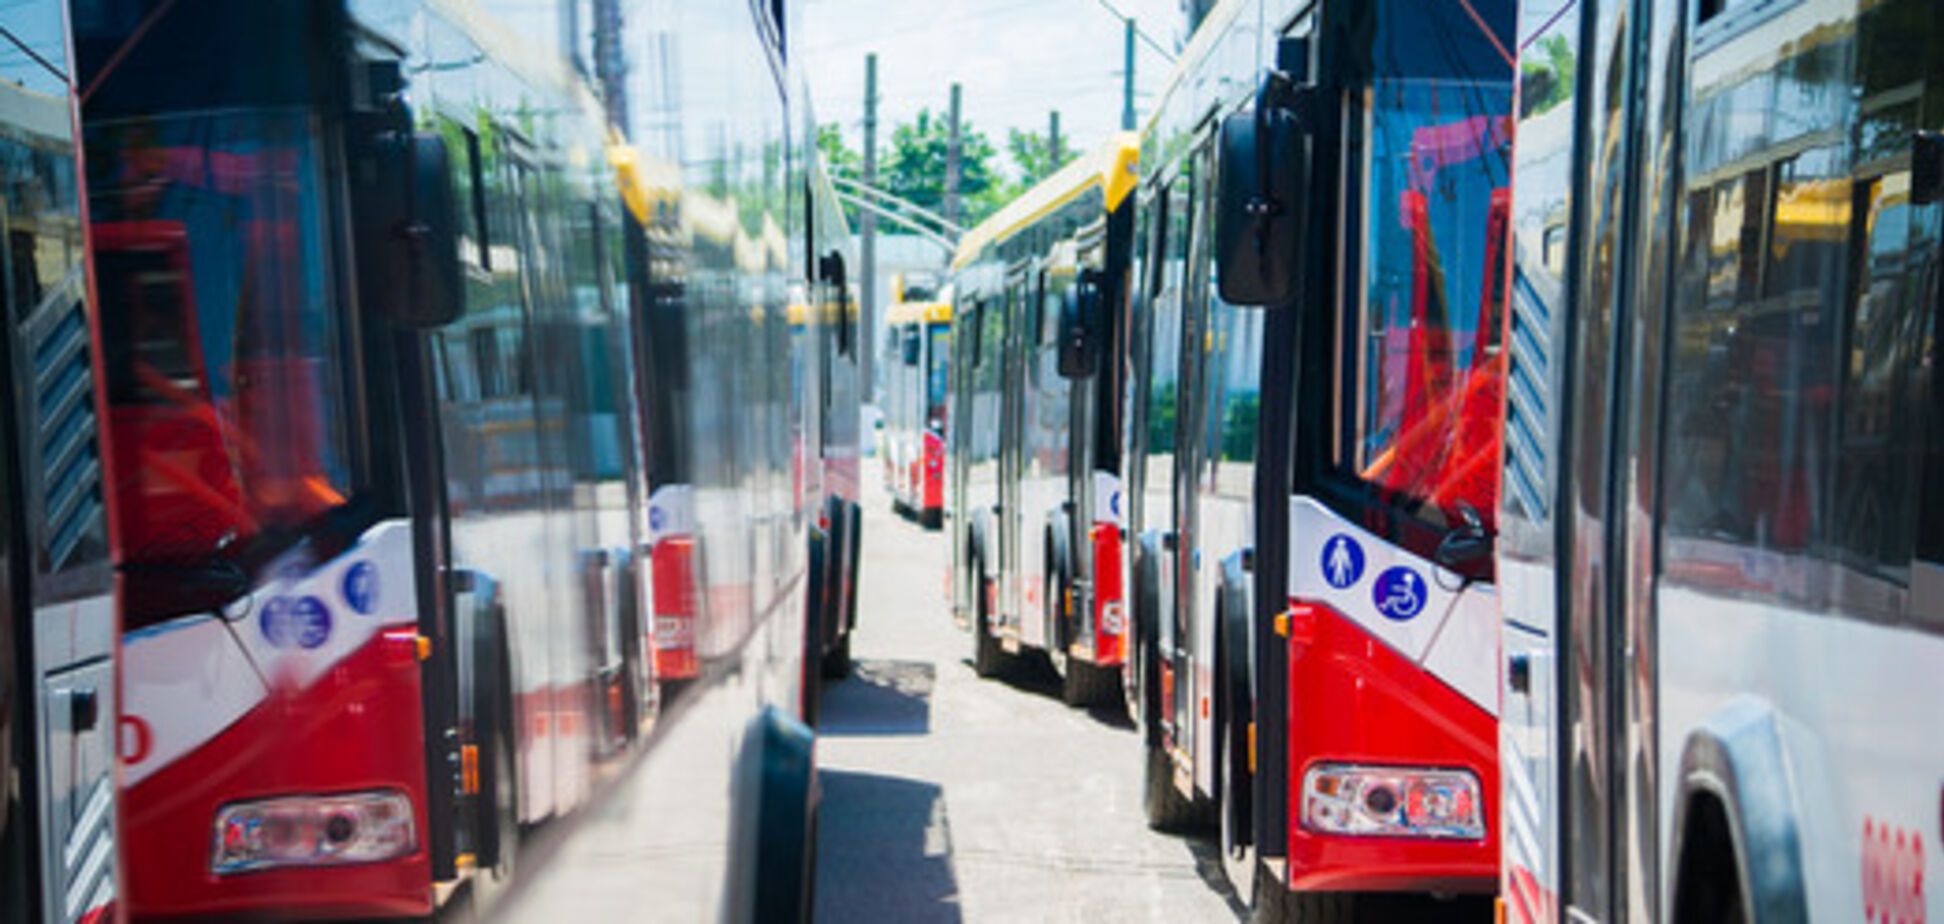 С Wi-Fi и под присмотром: в Одессе появятся новые комфортные троллейбусы